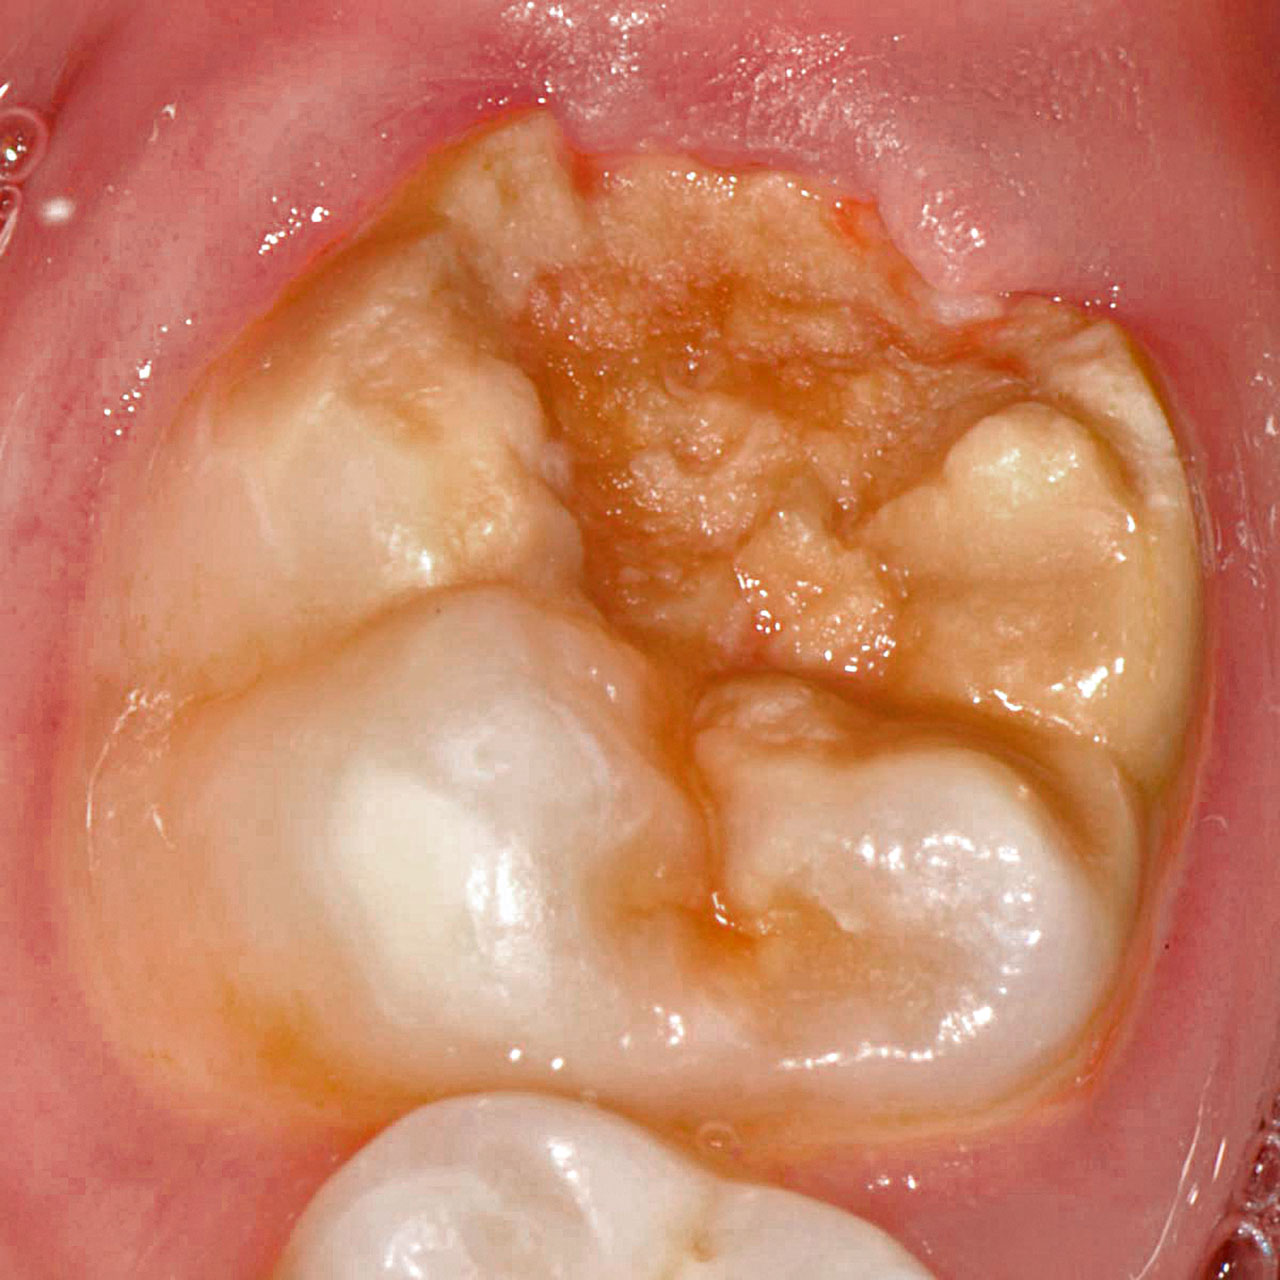 Abb. 4 Hypomineralisation mit einem großflächigen, präeruptiven Schmelz­einbruch an einem ersten bleibenden Molaren. Aufgrund des Umfangs der Strukturstörung sind bereits Anteile des Dentins exponiert.